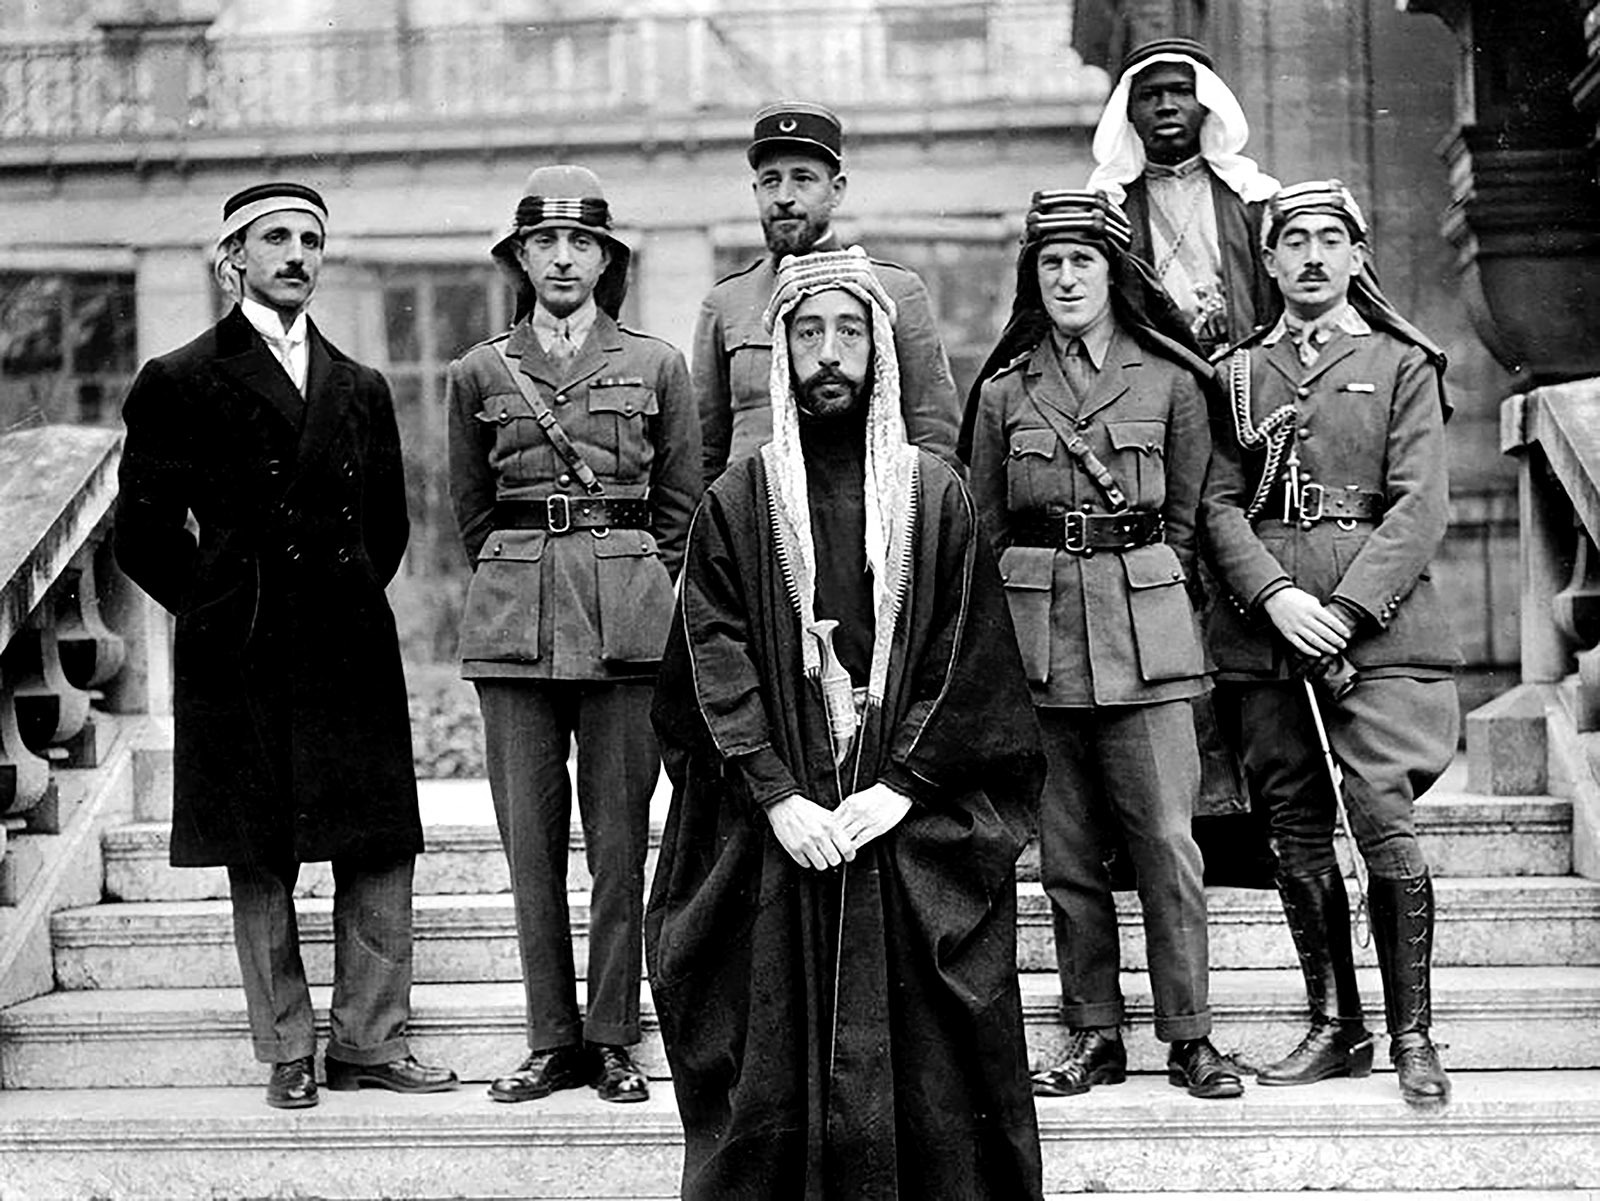 الأمير فيصل والوفد المرافق له، وبينهم توماس إدوارد لورنس، الملقب بلورنس العرب (الثالث من جهة اليمين)، في مؤتمر باريس للسلام عام 1919.